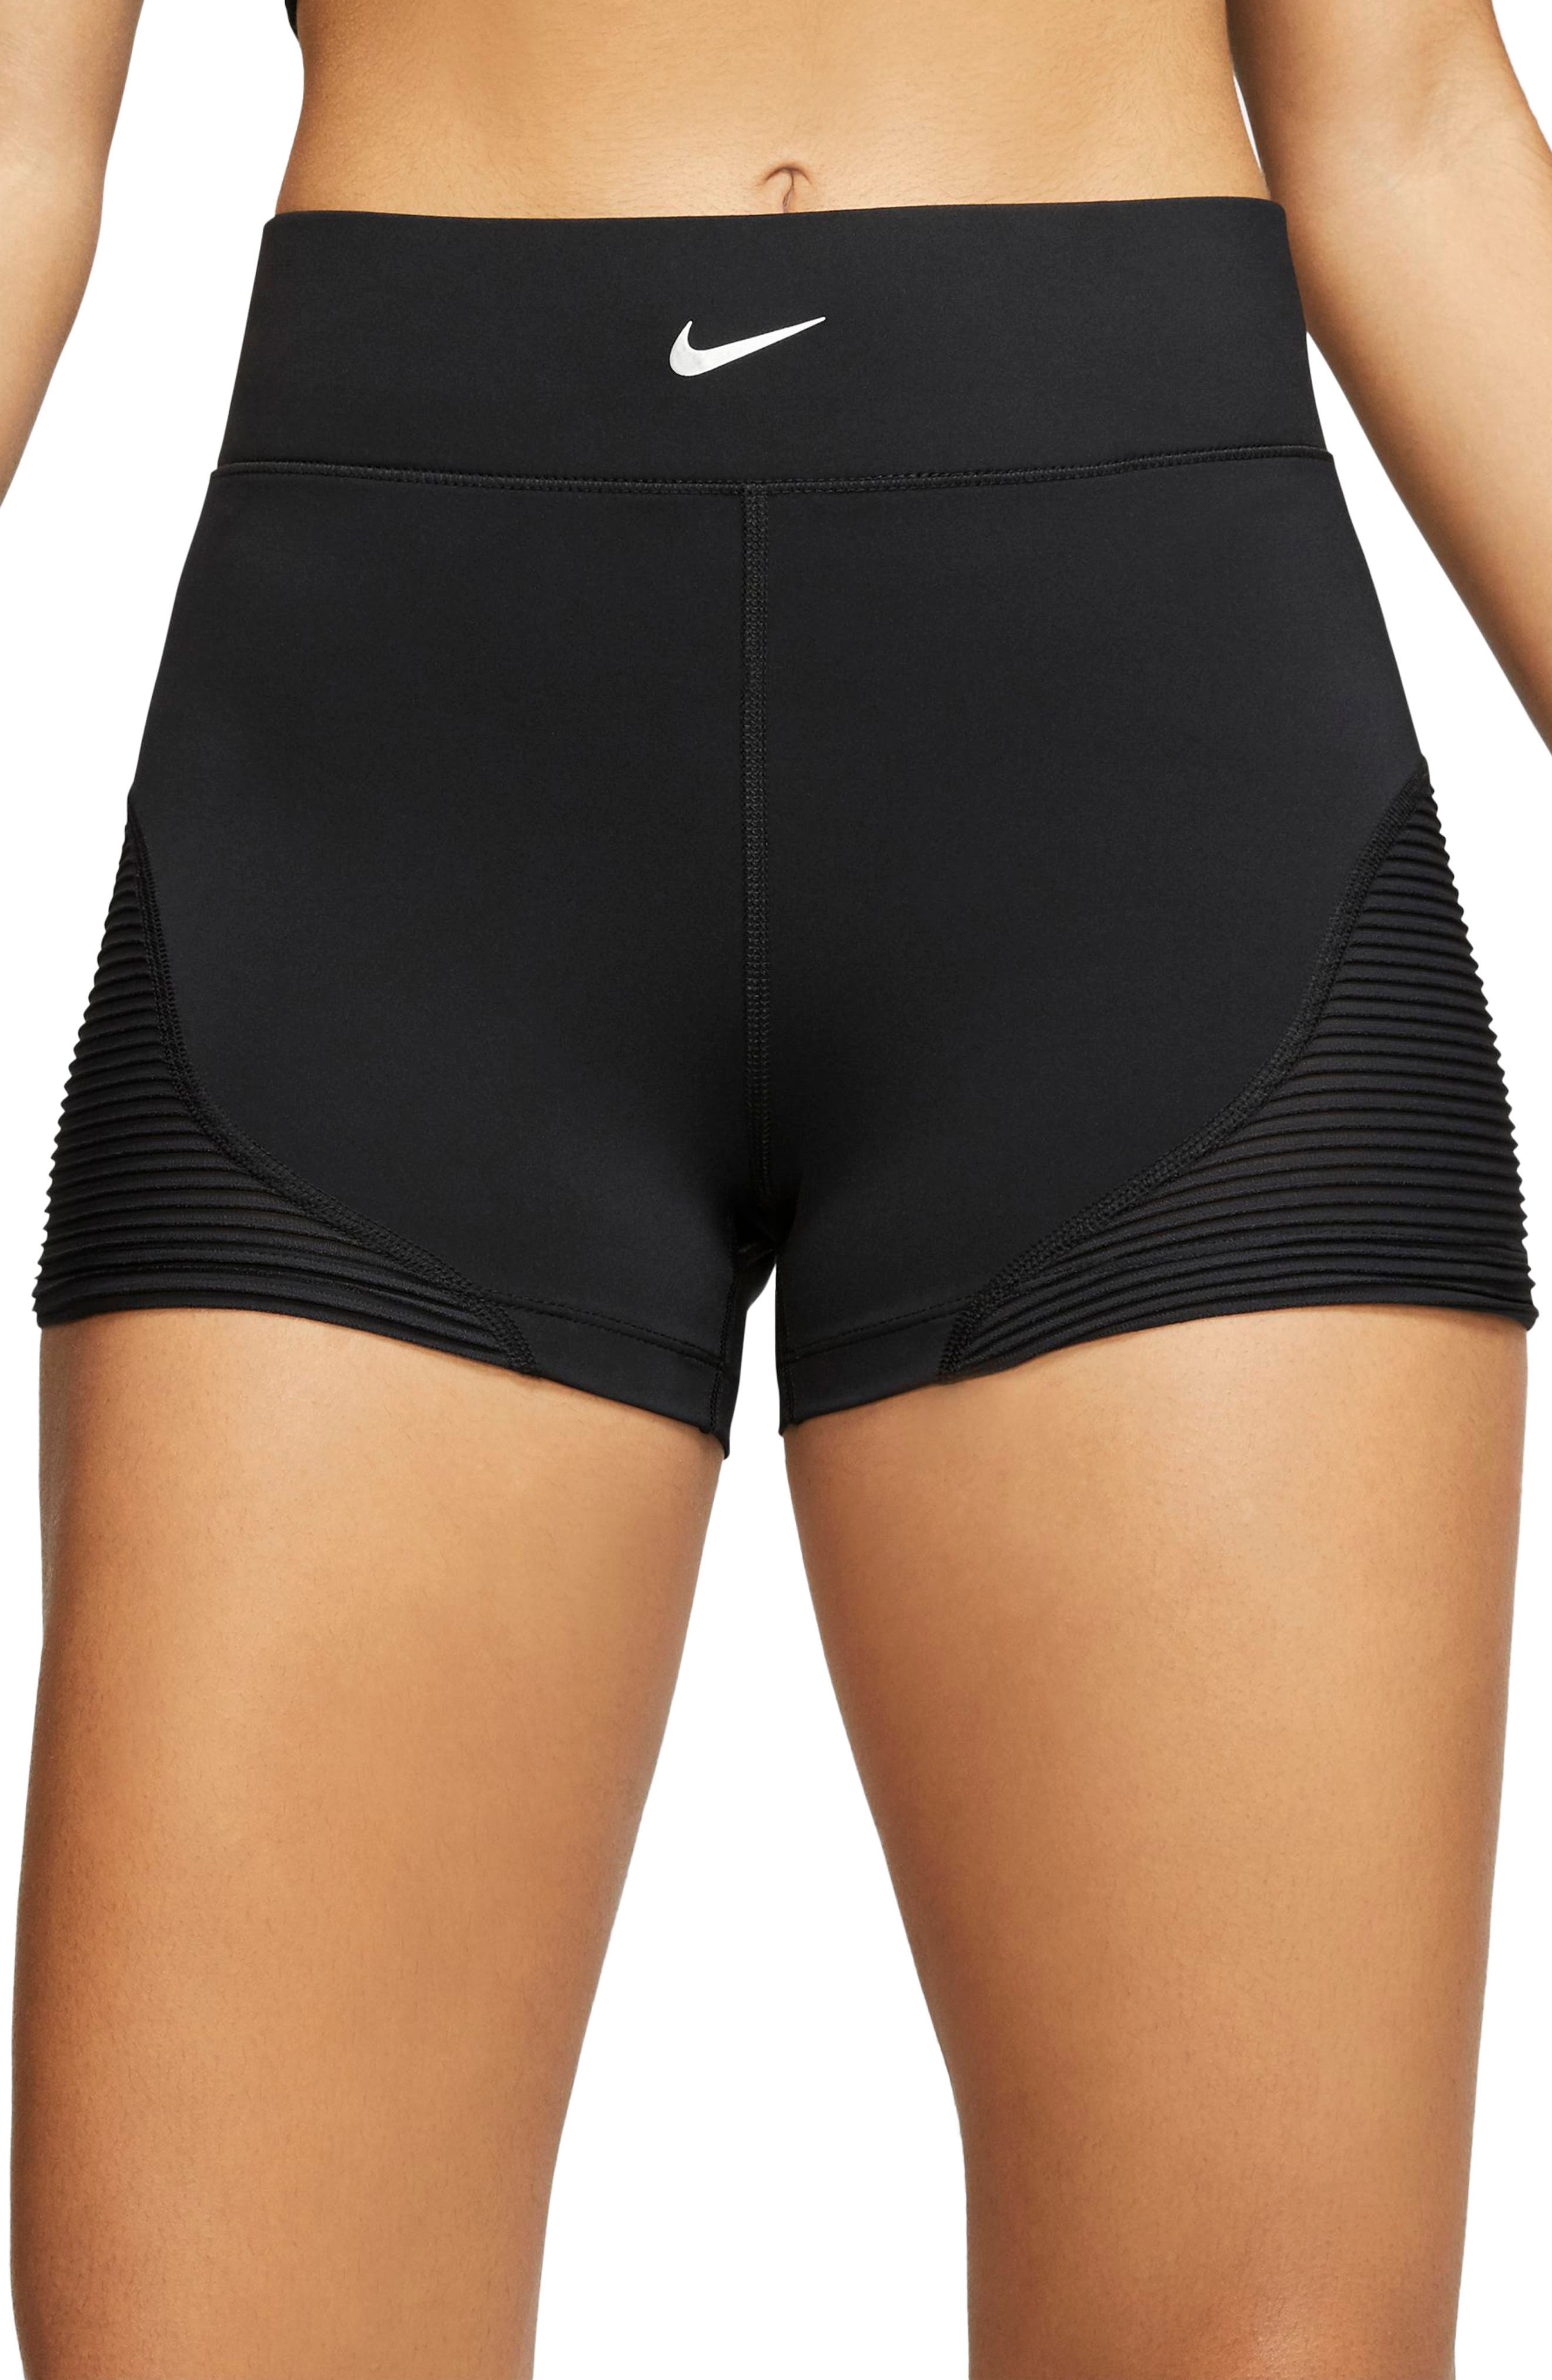 nike pro women's 3 inch shorts